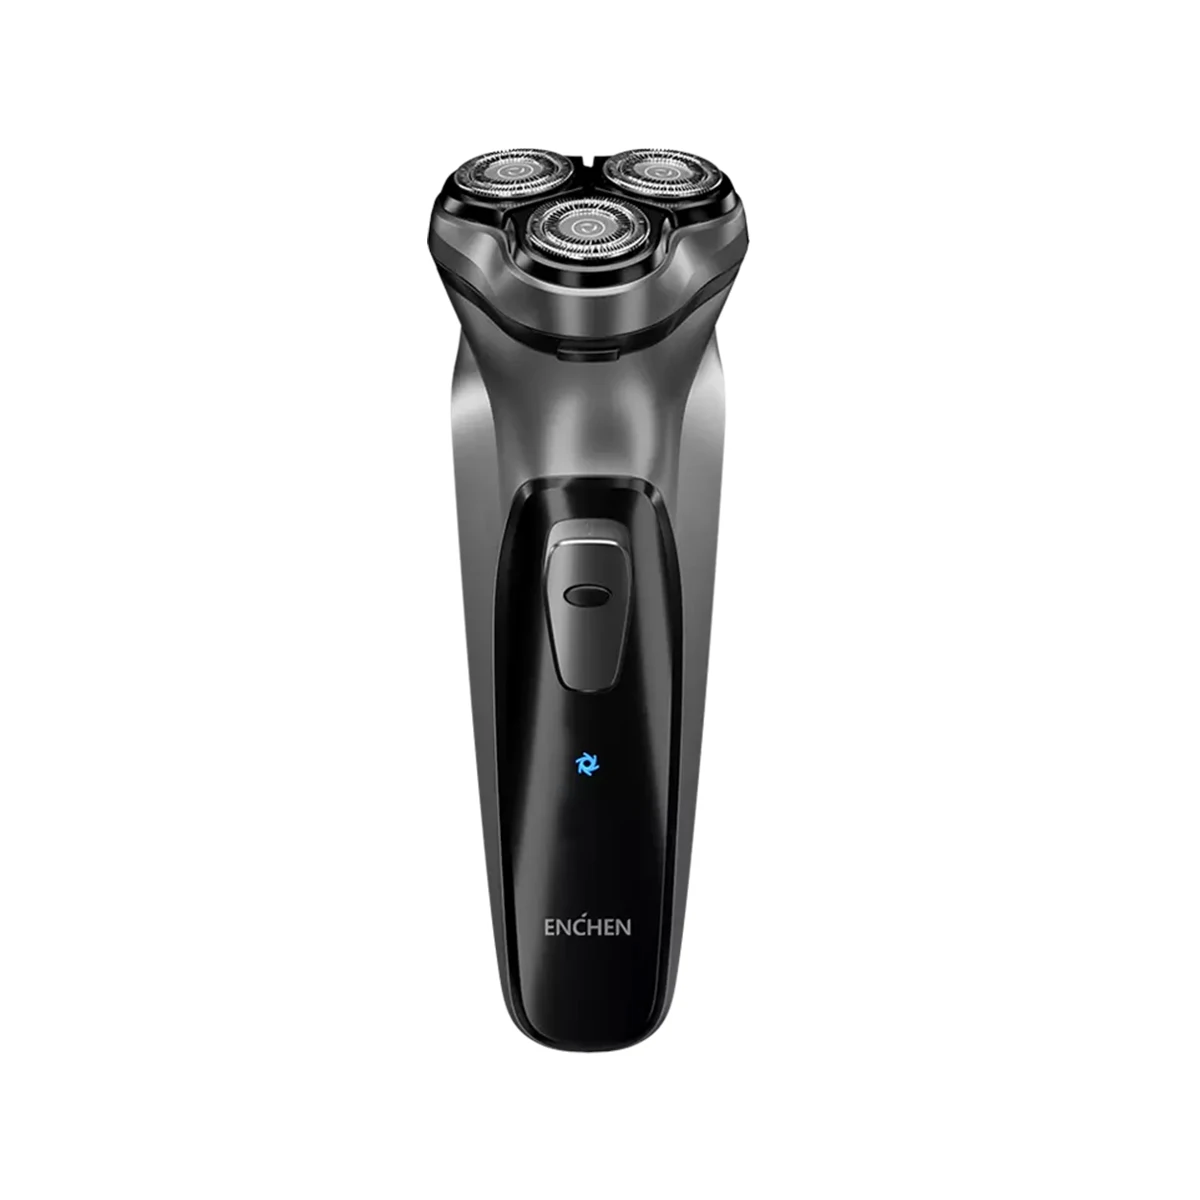 

Электрическая бритва ENCHEN Blackstone 3D для лица бритва, Мужская бритва с плавающим лезвием, моющаяся машинка для бритья бороды с USB-зарядкой